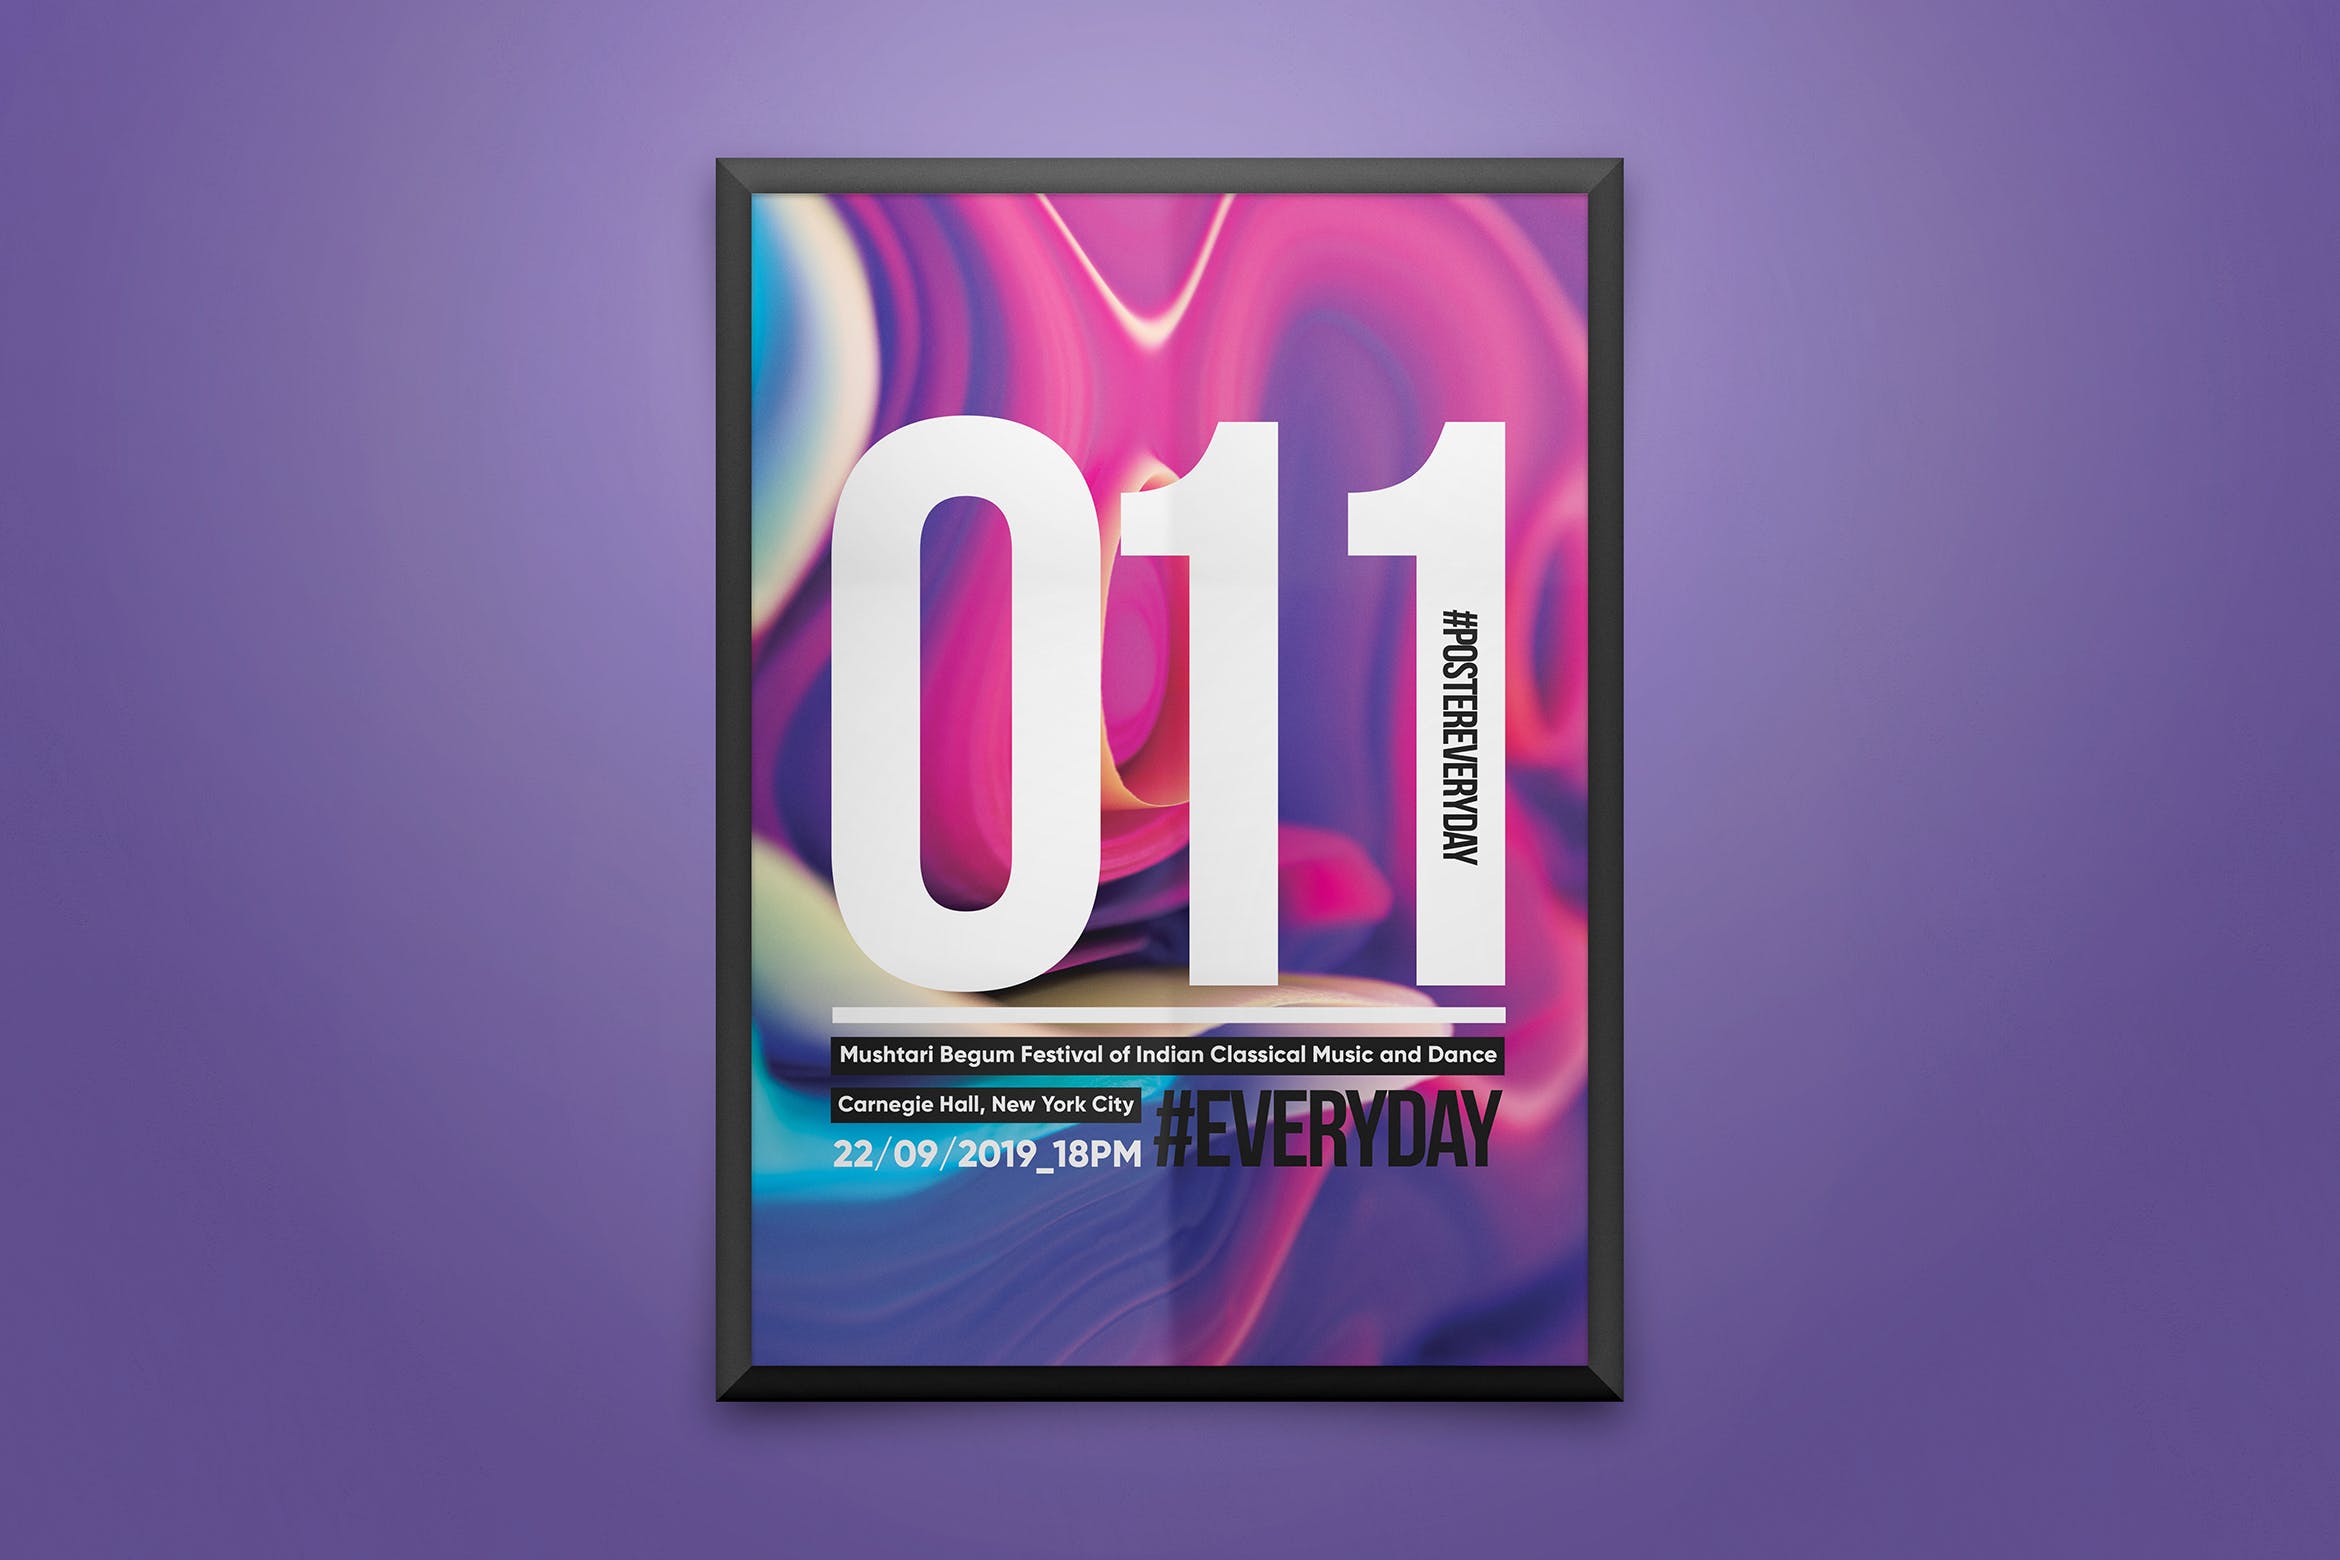 创意彩色液体背景海报PSD素材第一素材精选模板 Creative Poster Template插图